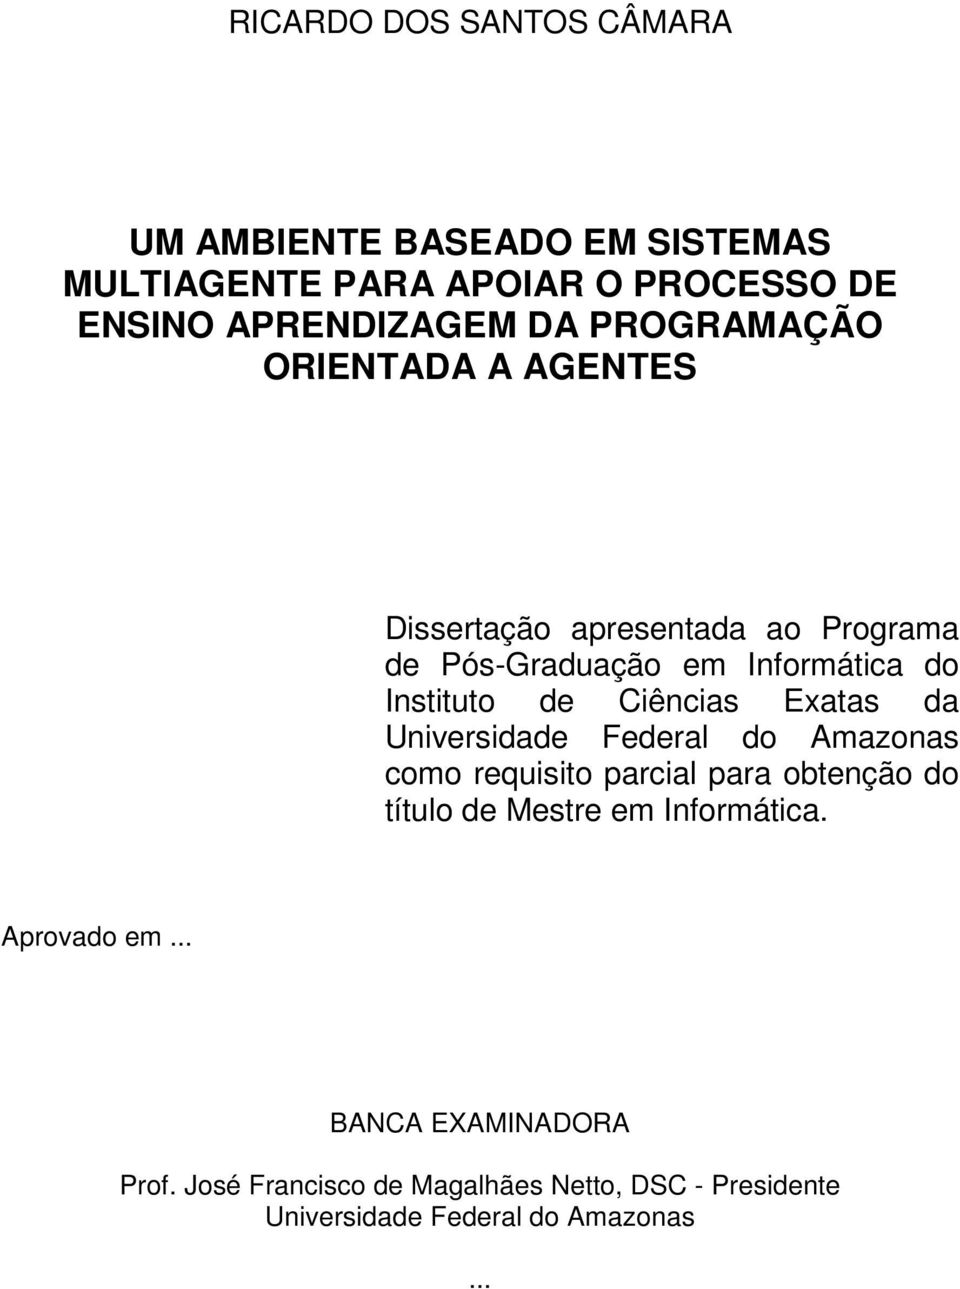 Ciências Exatas da Universidade Federal do Amazonas como requisito parcial para obtenção do título de Mestre em